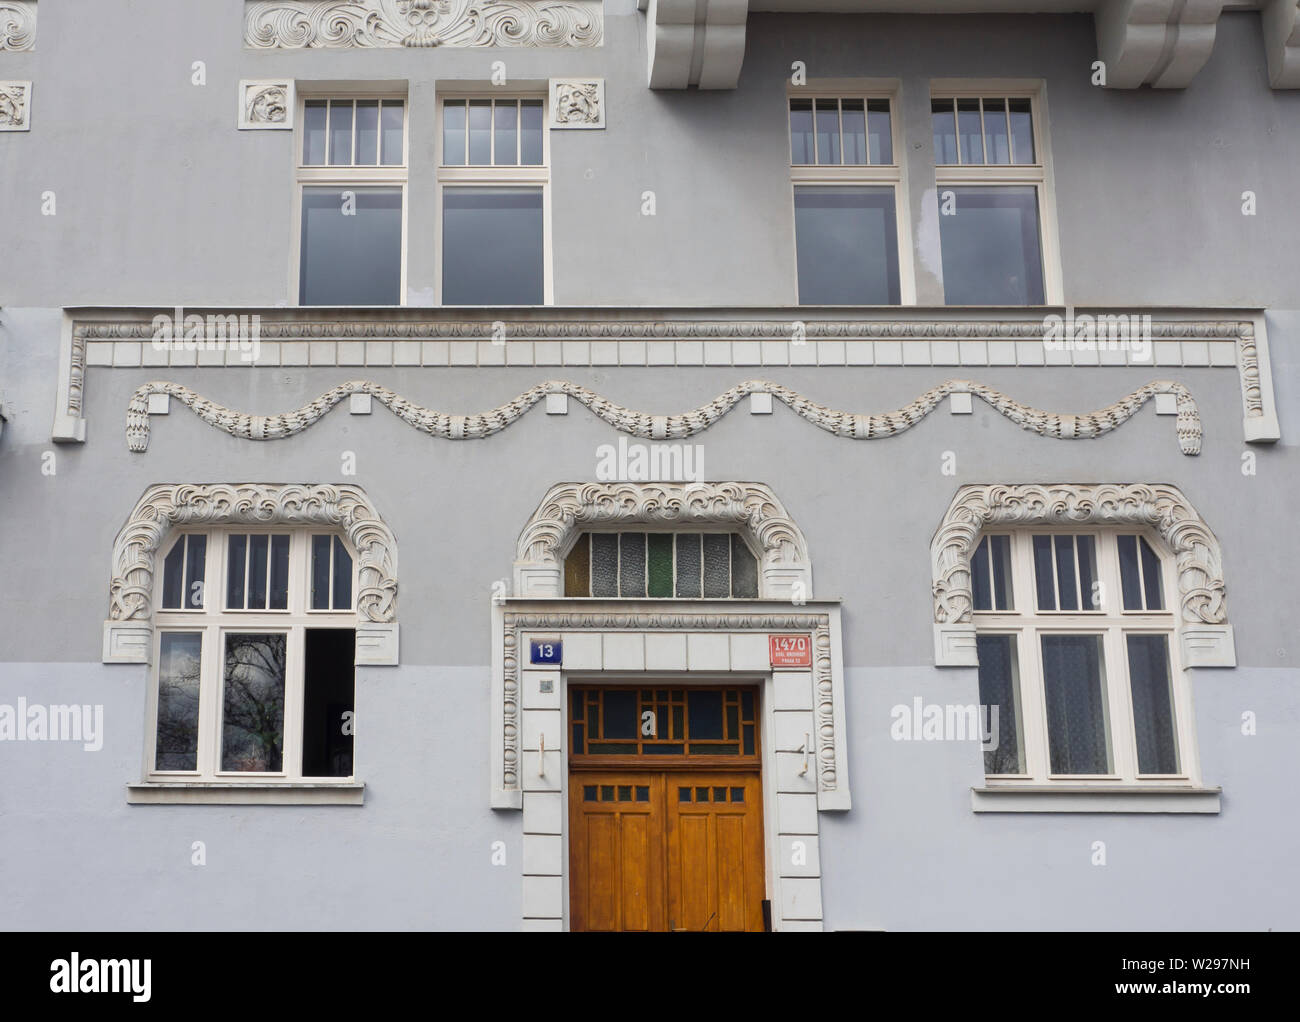 Construcción de la fachada en estilo Art Nouveau a lo largo de la calle residencial U Havlíčkových sadů en el distrito de Vinohrady de Praga, República Checa Foto de stock